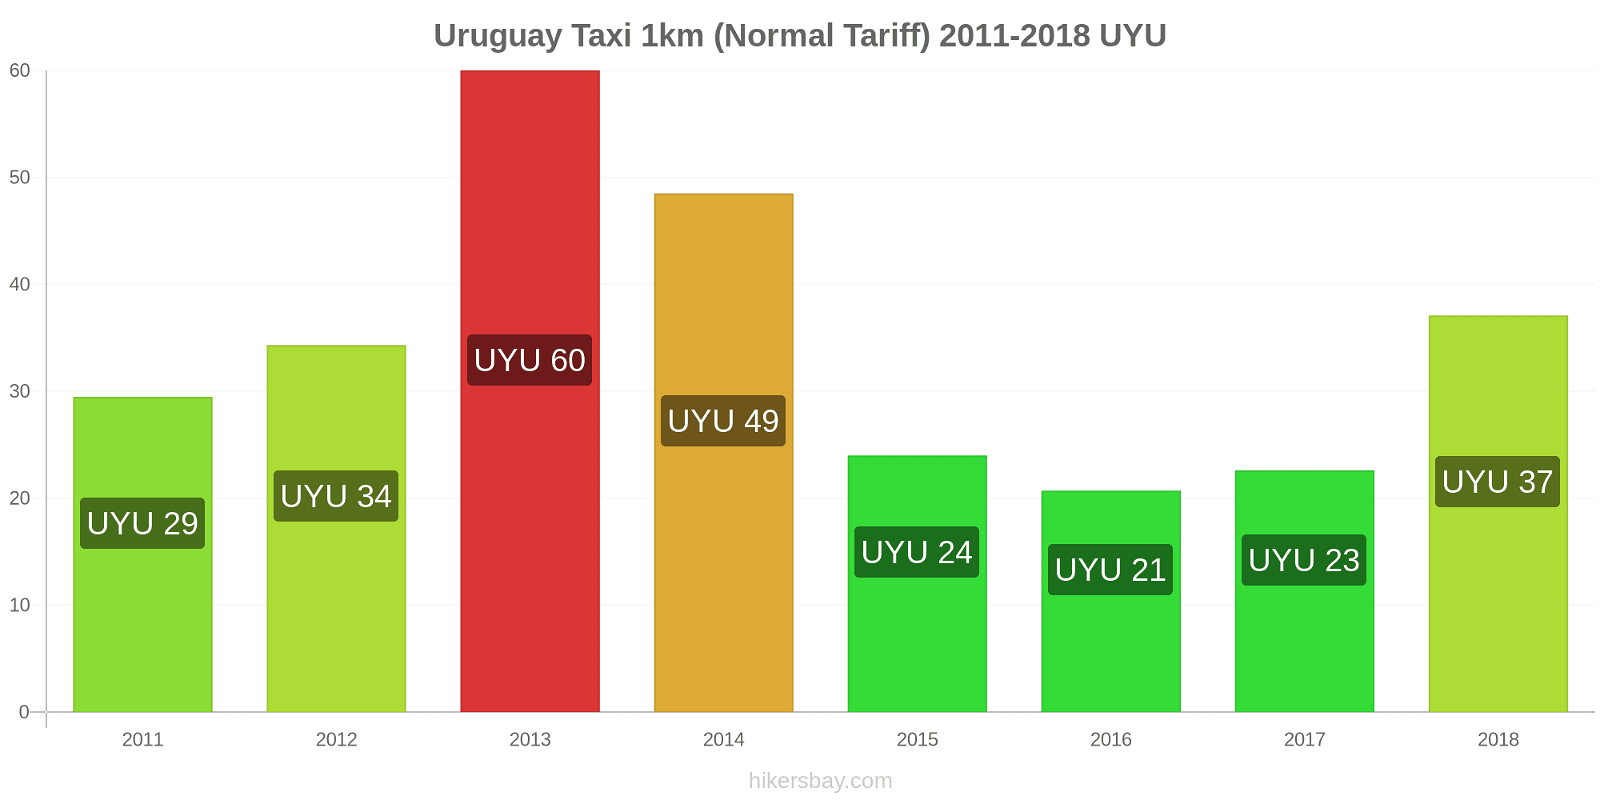 Uruguay price changes Taxi 1km (Normal Tariff) hikersbay.com